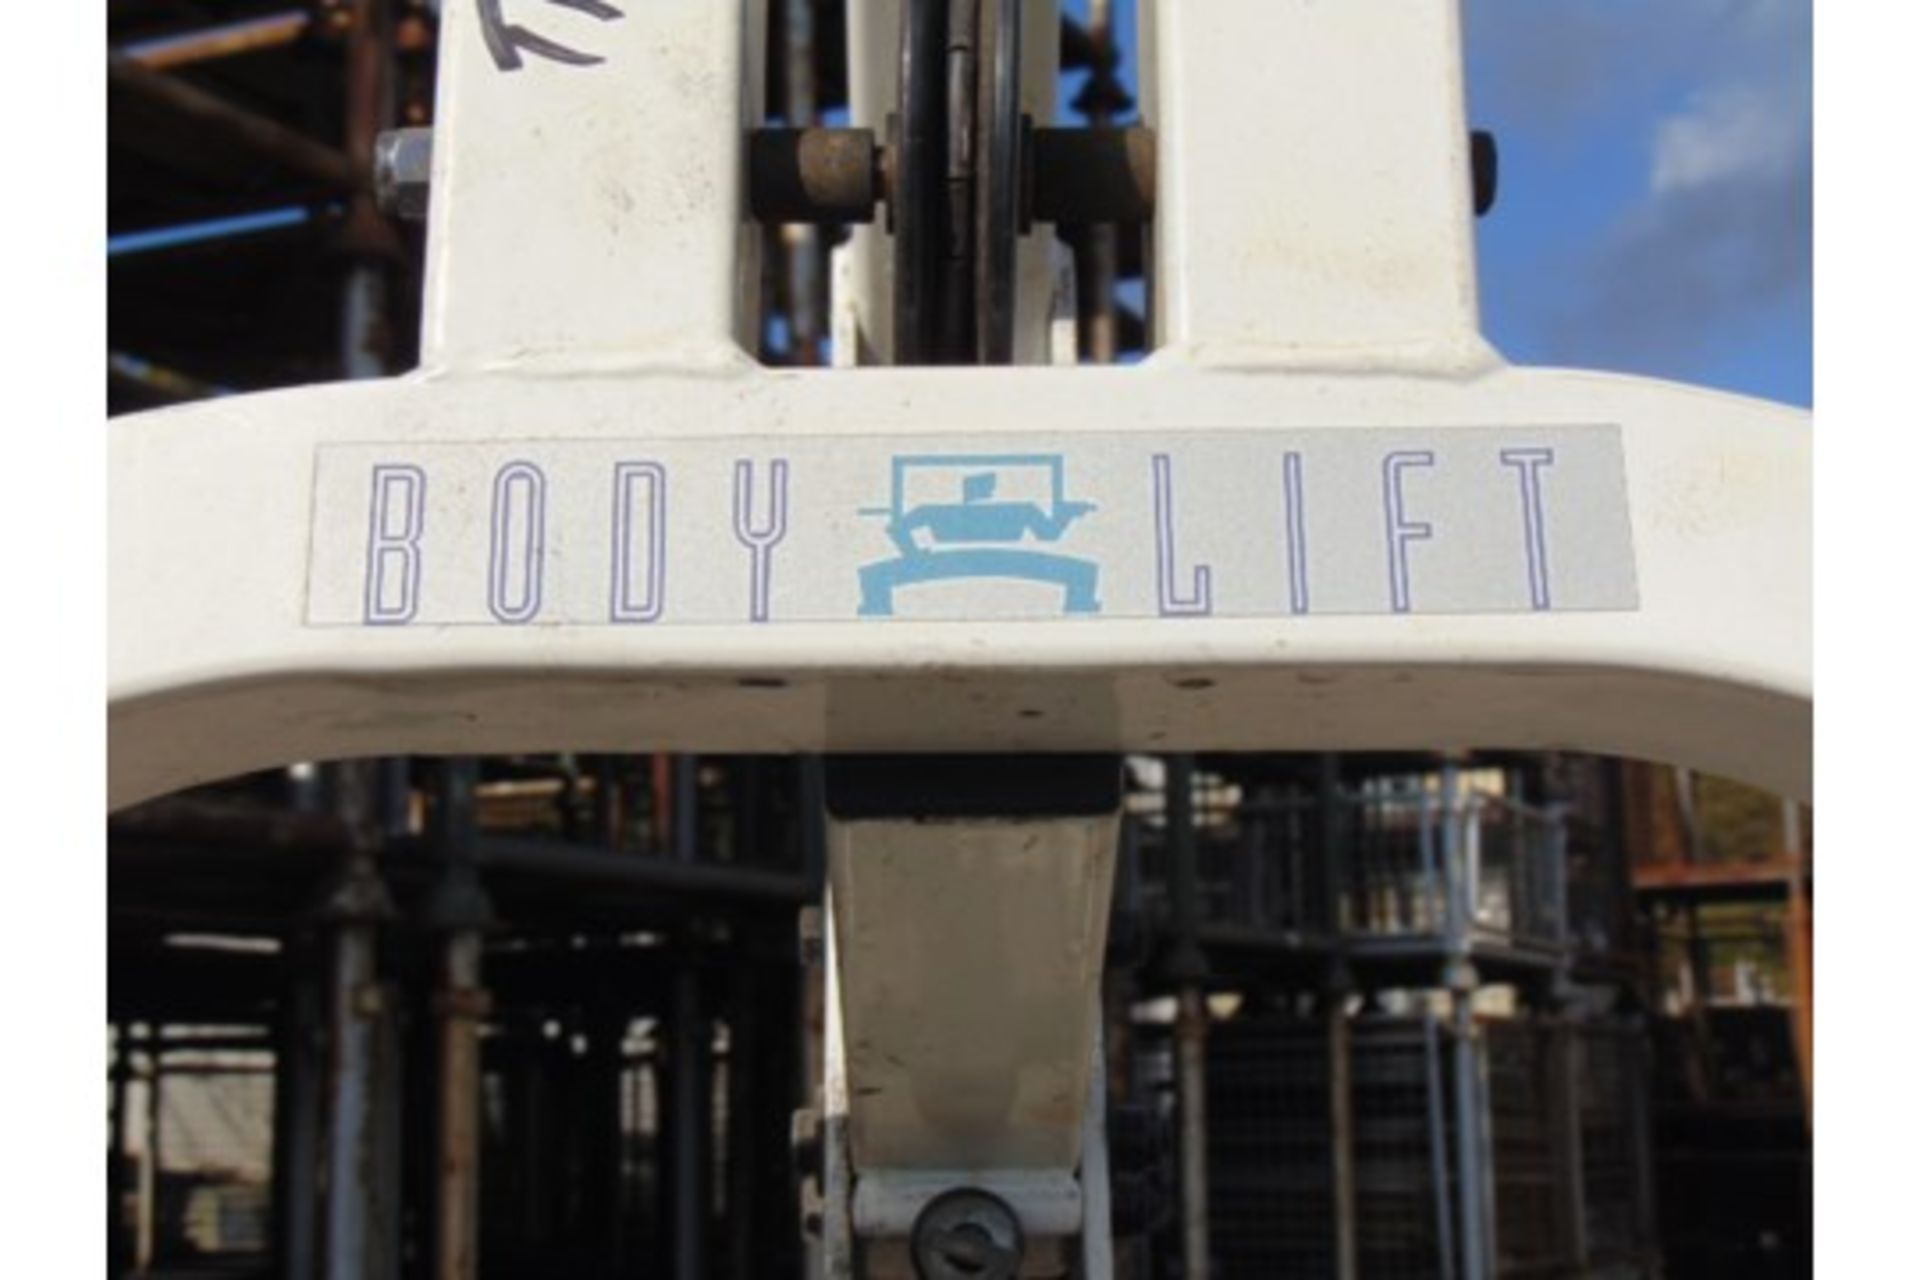 Body Lift Exercise Machine - Image 10 of 10